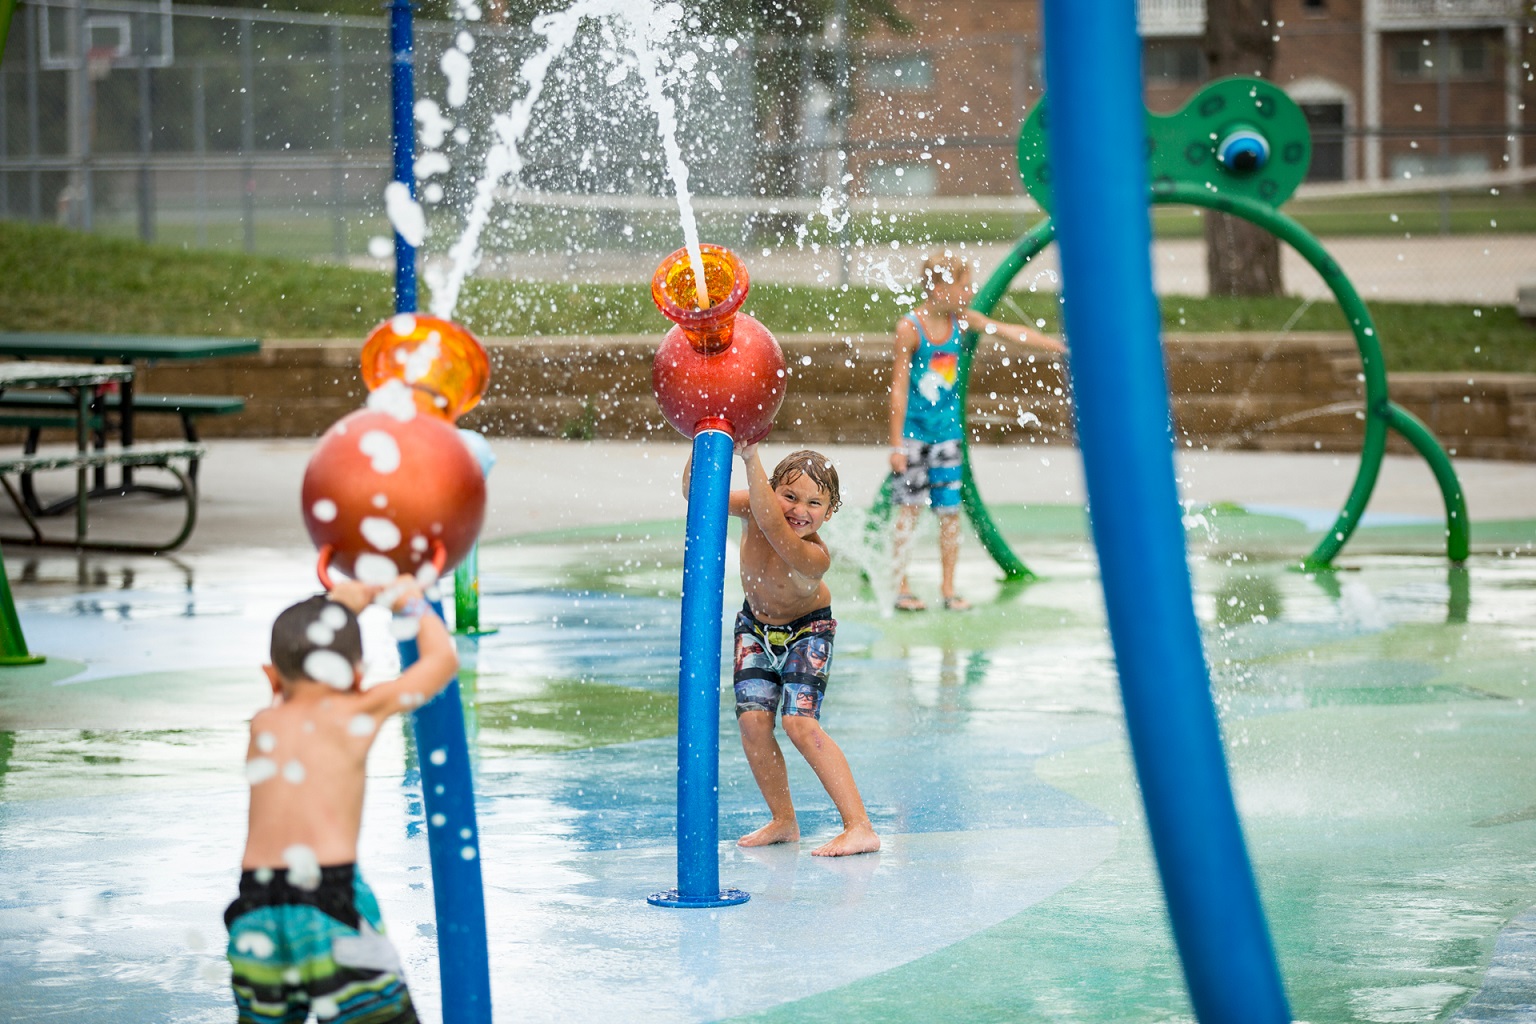 water-play - Playground Equipment Australia